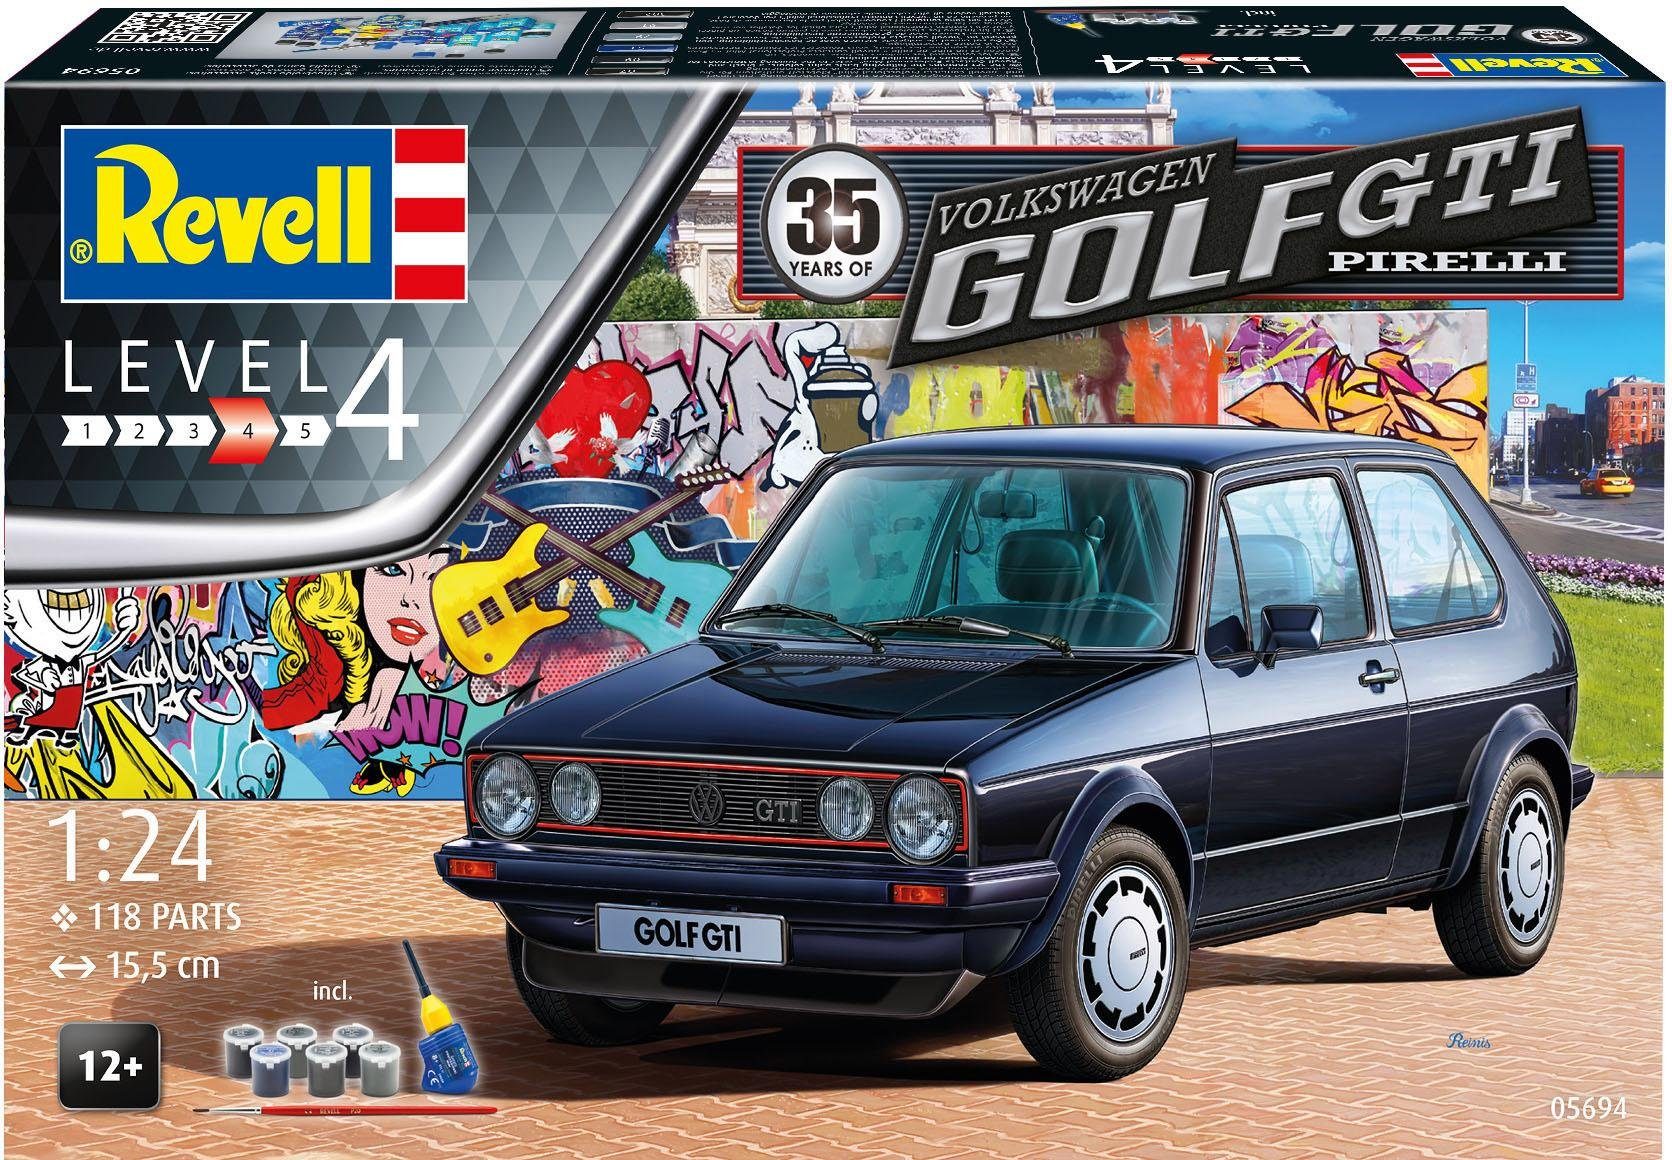 Revell® Modellbausatz »Model Set 35 Jahre VW Golf GTI Pirelli«, Maßstab  1:24, (Set), Made in Europe online kaufen | OTTO